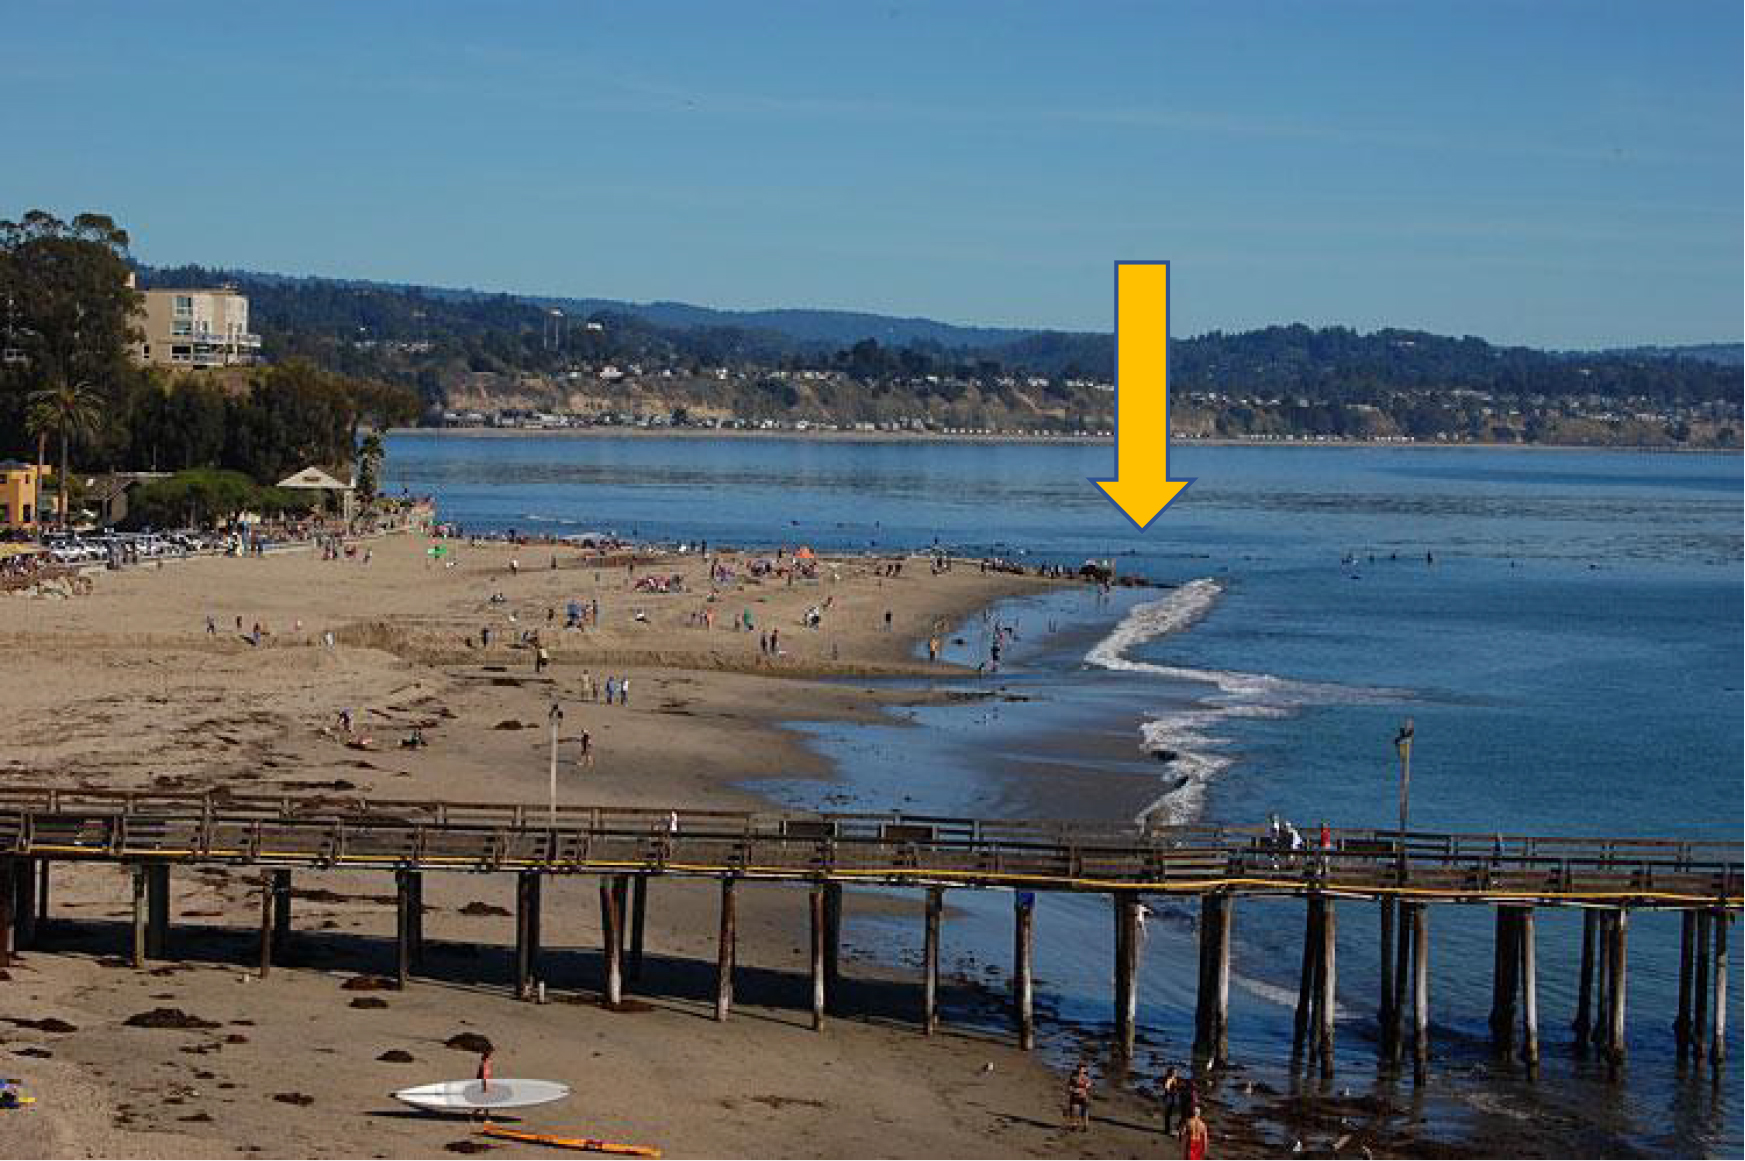 Capitola Beach with a yellow arrow to show a beach groin